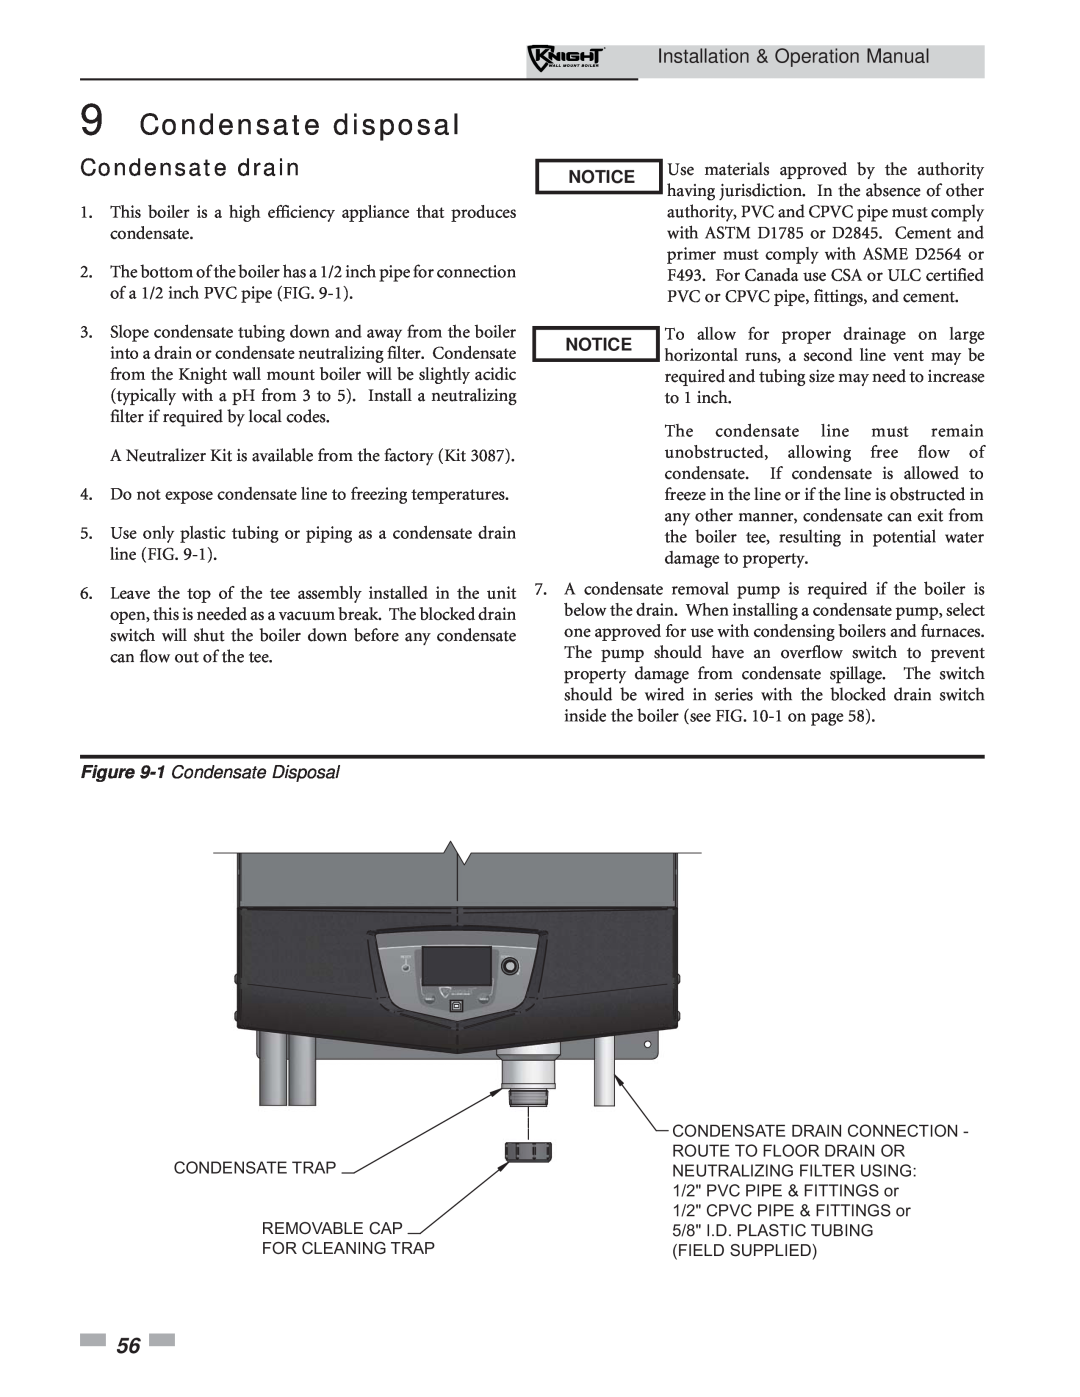 Lochinvar 51-211 Condensate disposal, Condensate drain, 1 Condensate Disposal, Installation & Operation Manual 